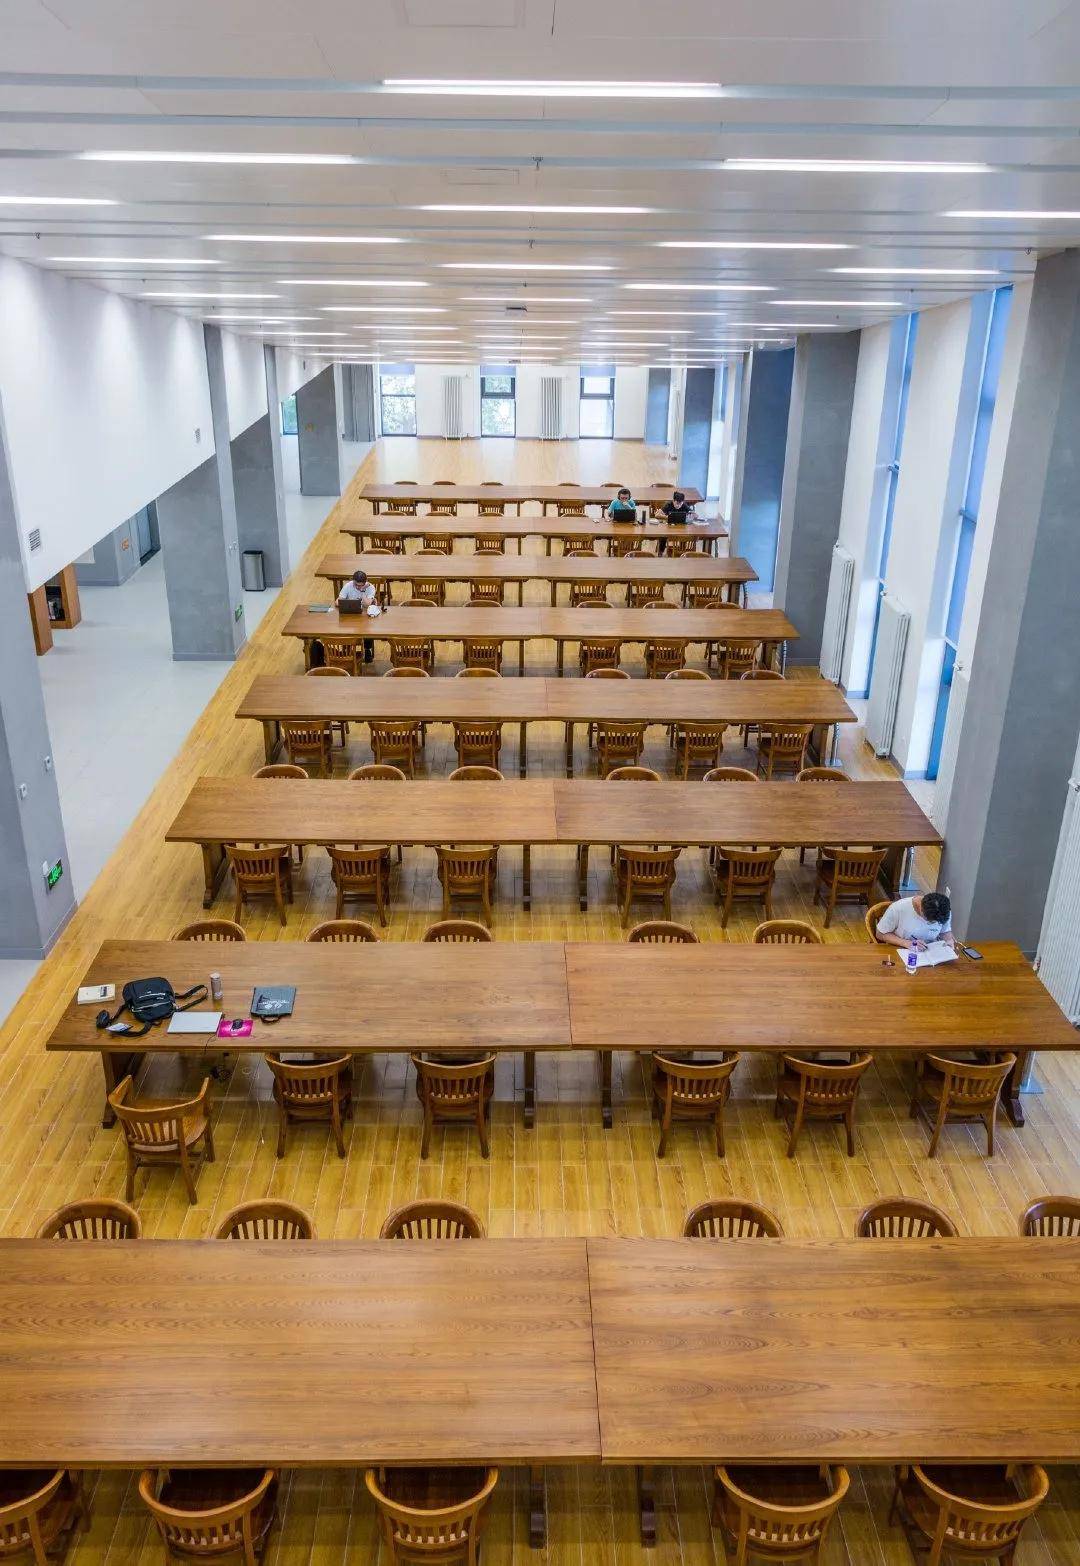 清华大学图书馆始建于1911年的清华学堂,1912年改建为清华学校,建立